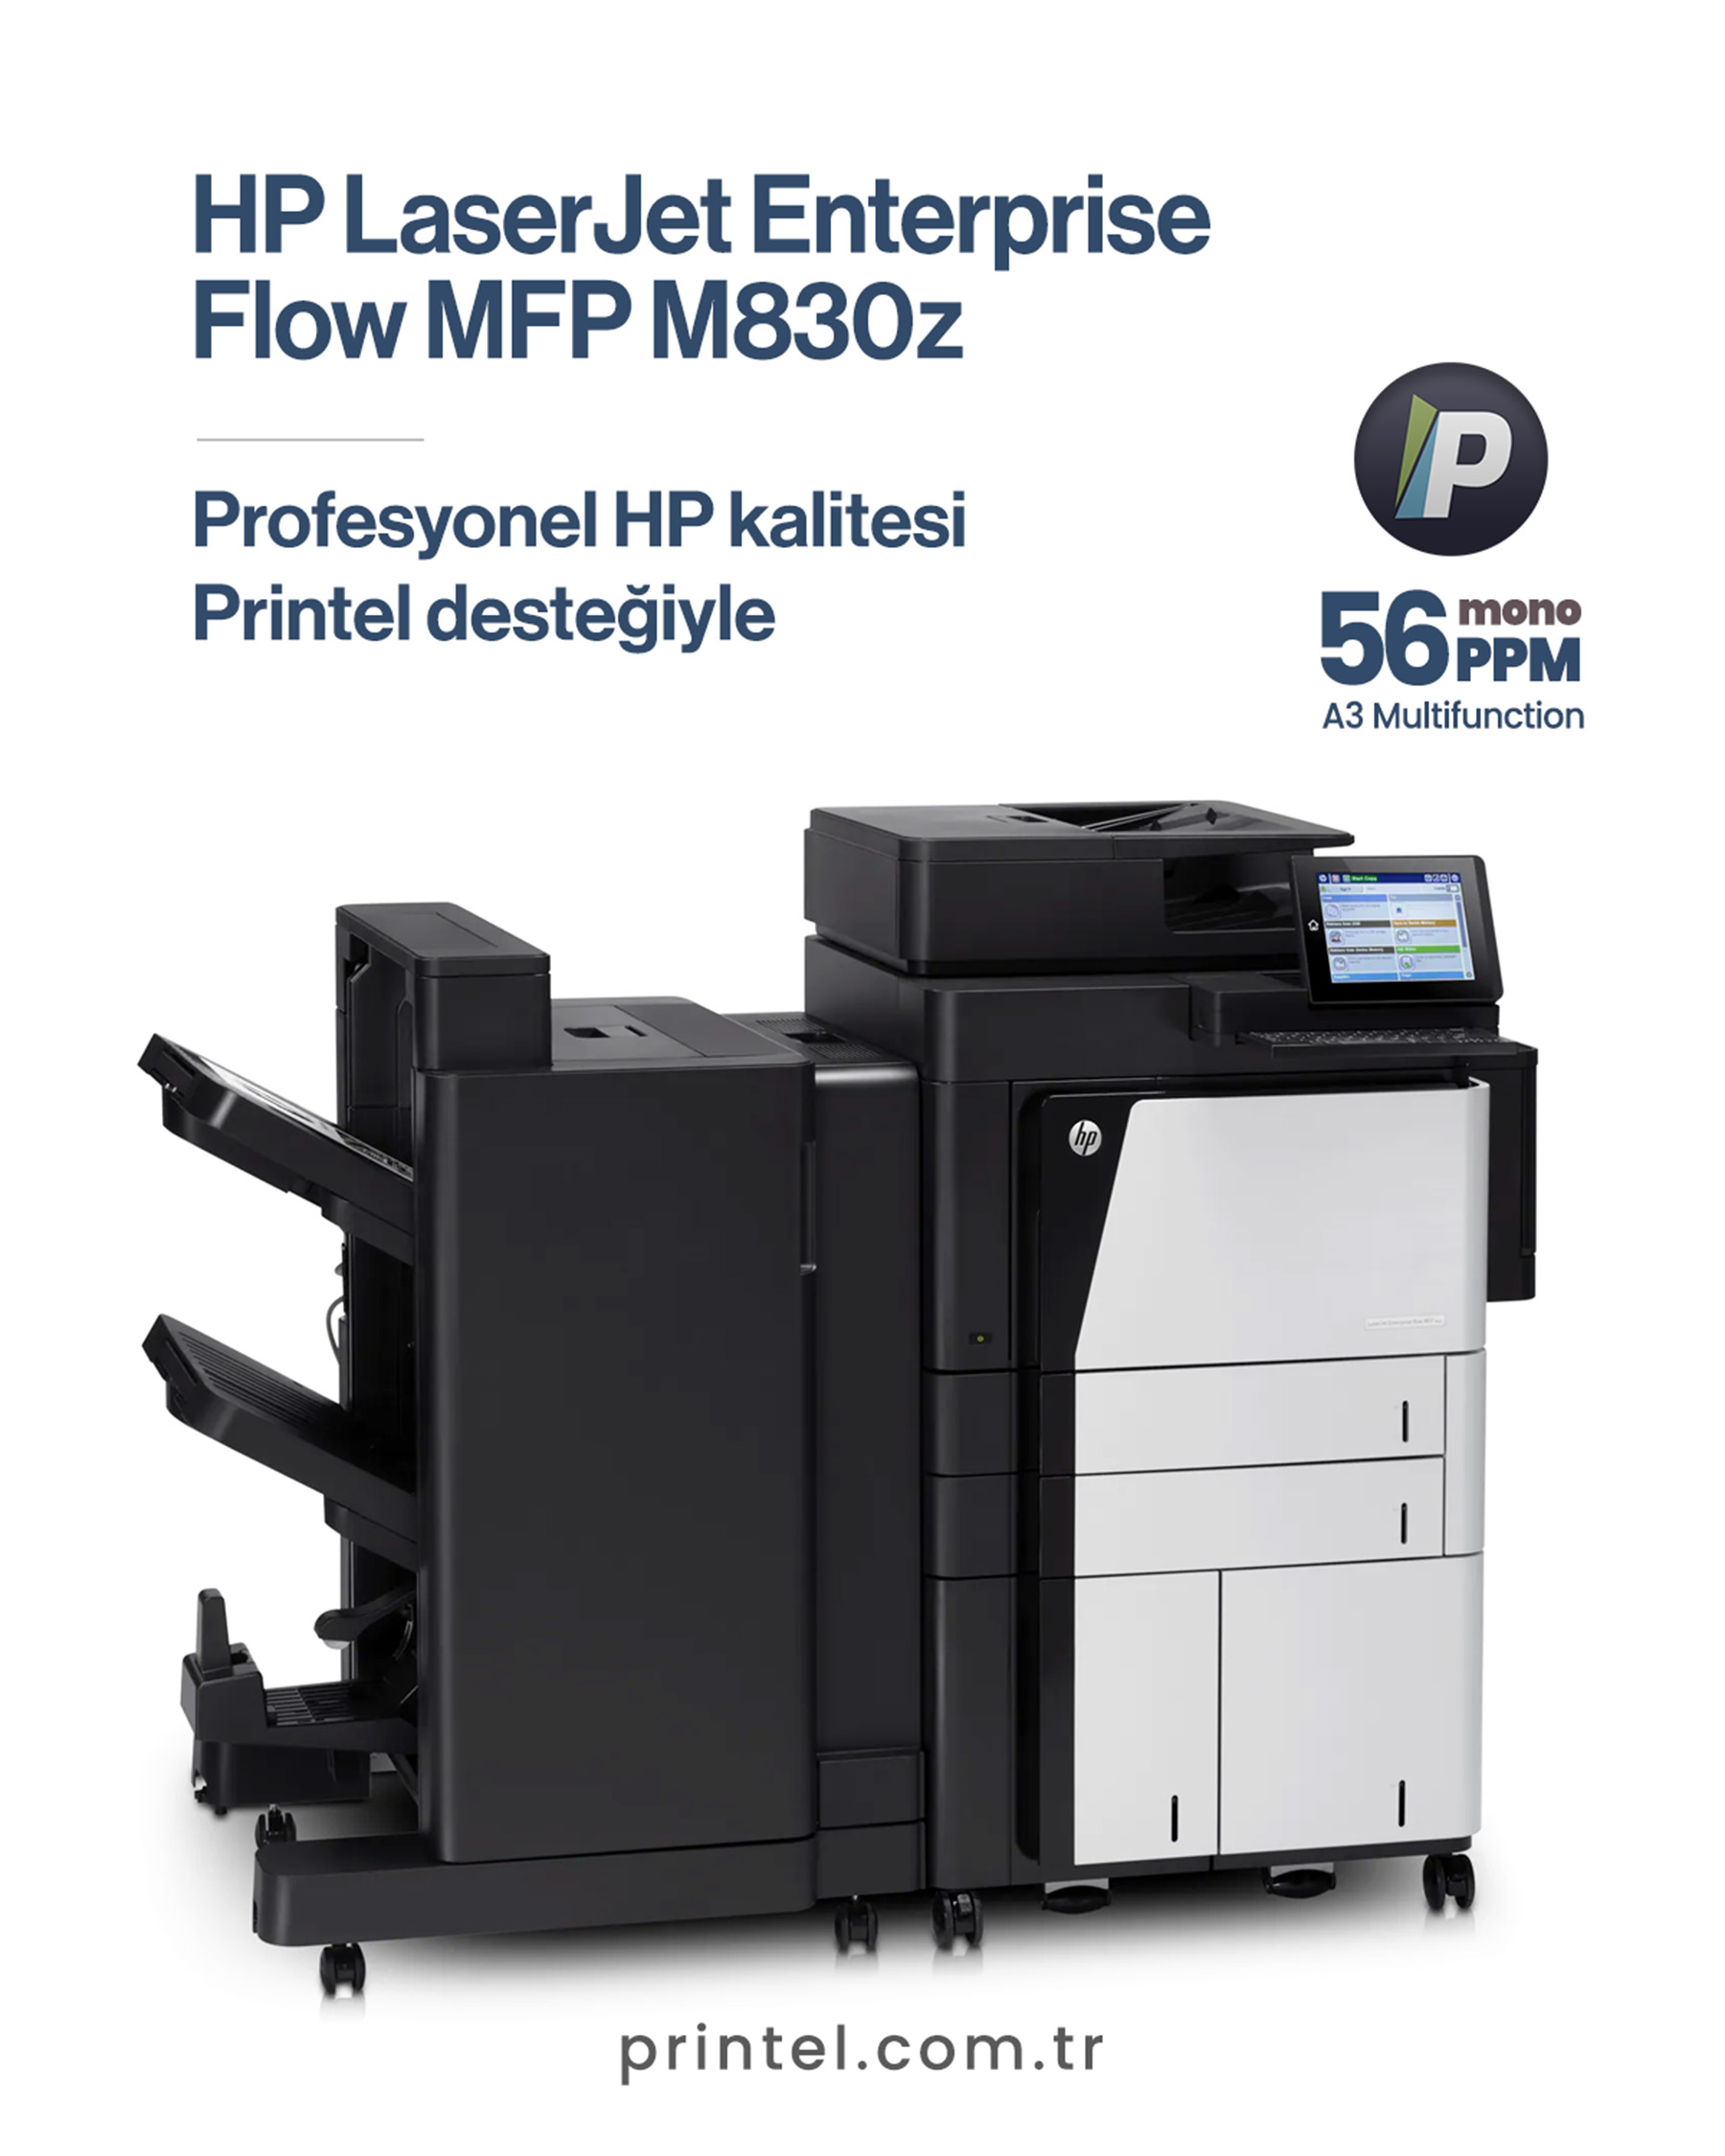 HP LaserJet Enterprise flow MFP M830z 14